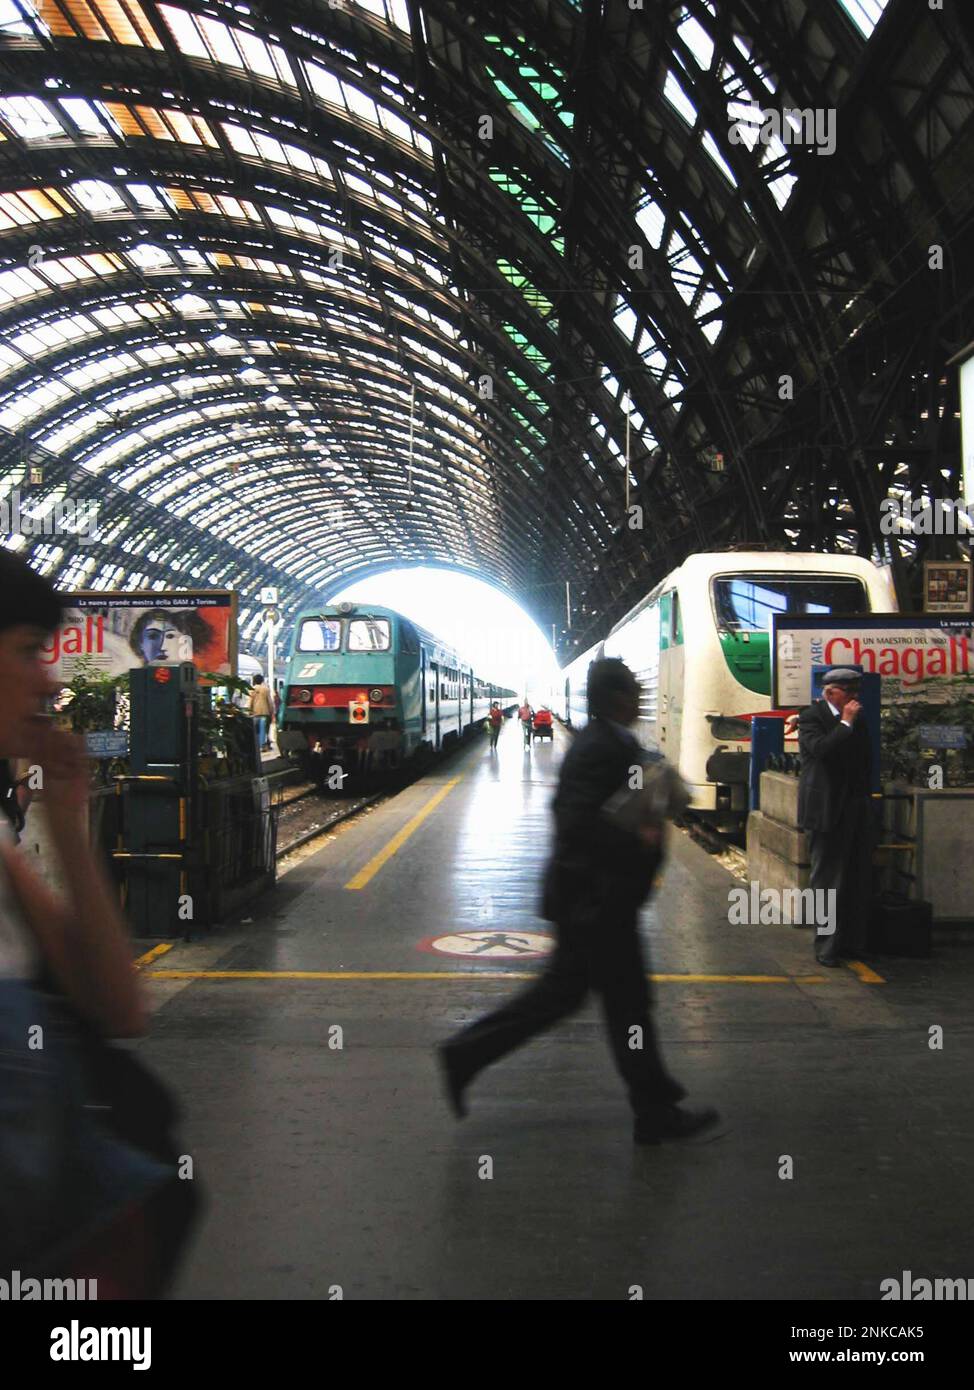 2004 , Milano, Italy : The Stazione Centrale ( Central Raill Station ) - ITALIA - Milan - ART DECO - ferroviaria - ferrovia - ferrovie - viaggiatori di fretta - speedly - ritardo - delay - passangers - passeggero - passeggieri  ---- Photo by Giovanbattista BRAMBILLA --- Archivio GBB Stock Photo